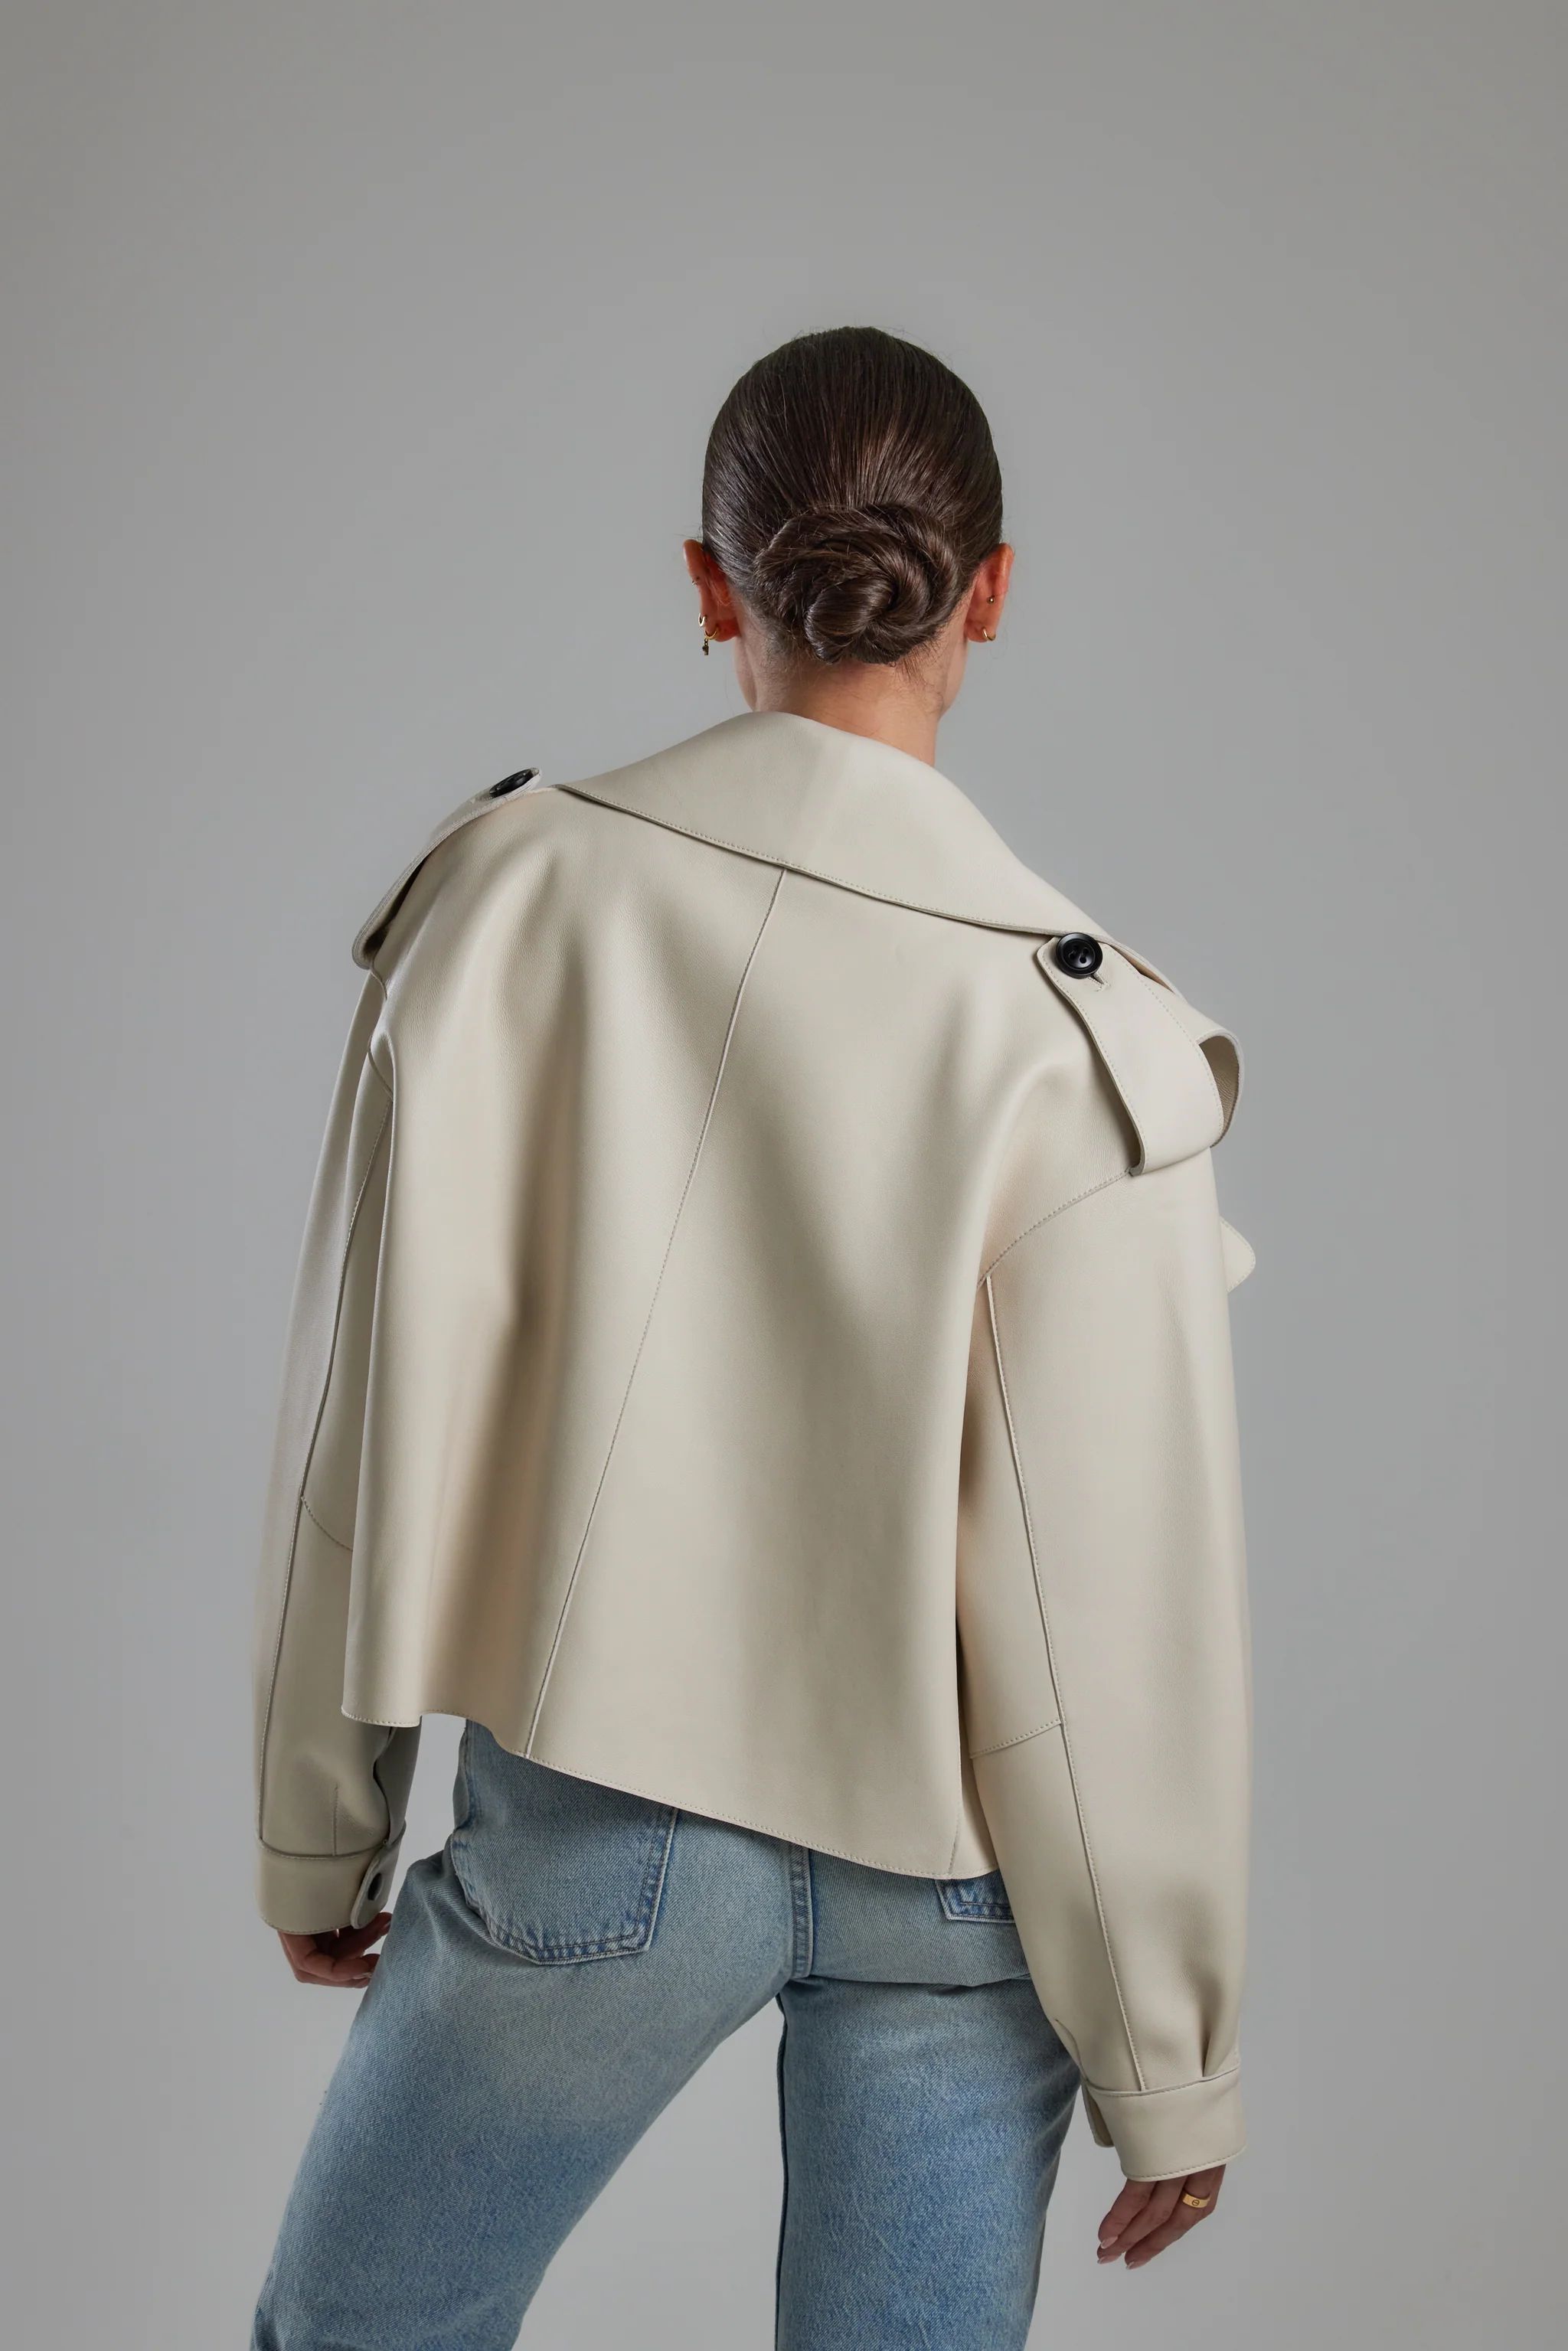 Off White Oversized Leather Jacket | Jane and Tash Bespoke